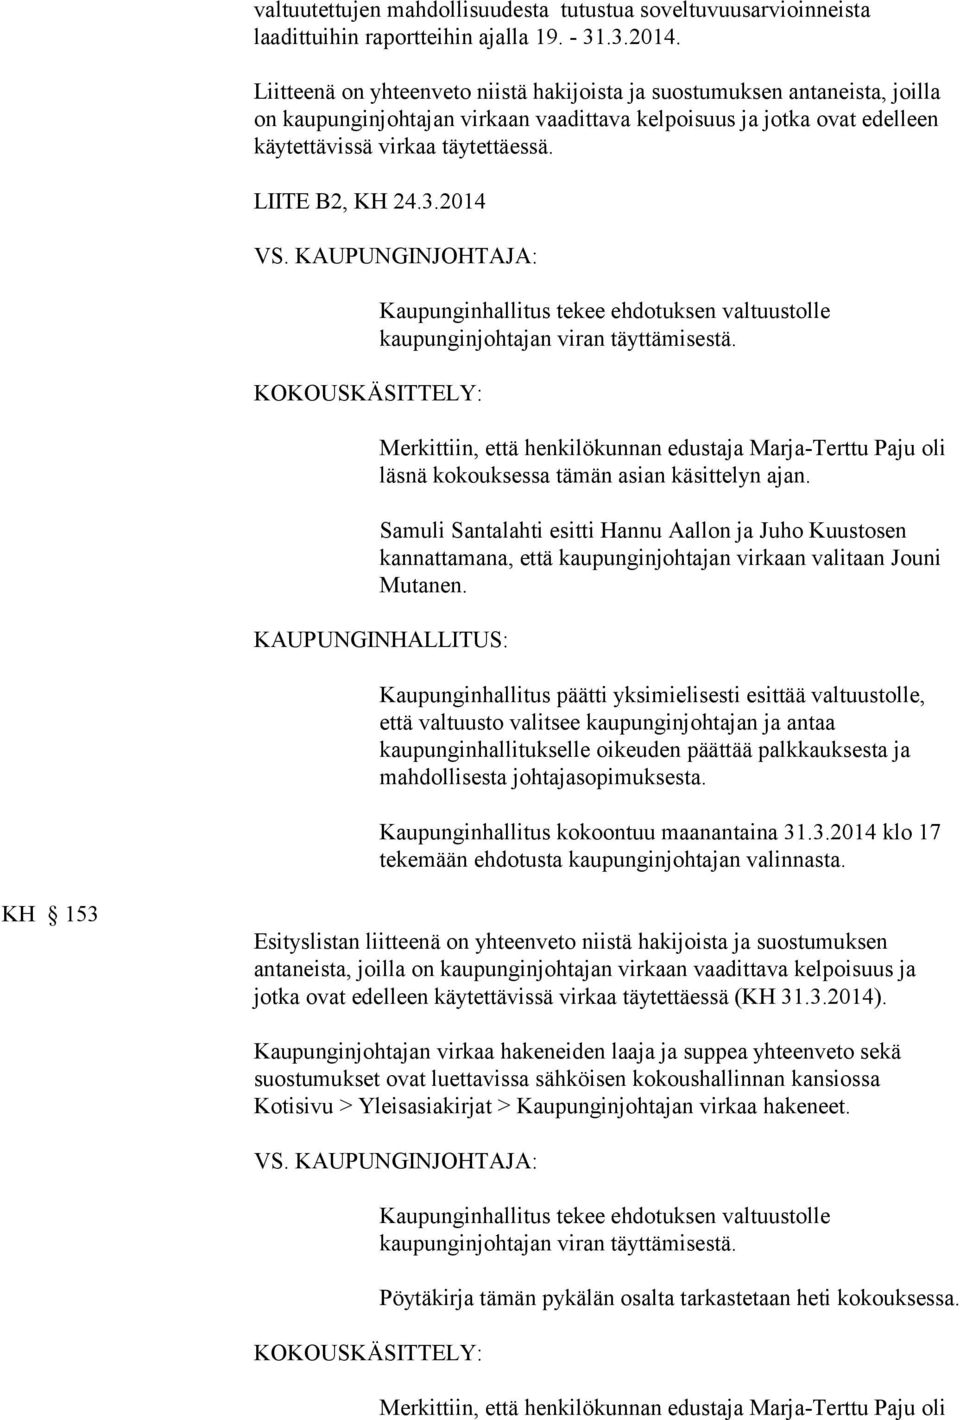 LIITE B2, KH 24.3.2014 Kaupunginhallitus tekee ehdotuksen valtuustolle kaupunginjohtajan viran täyttämisestä.